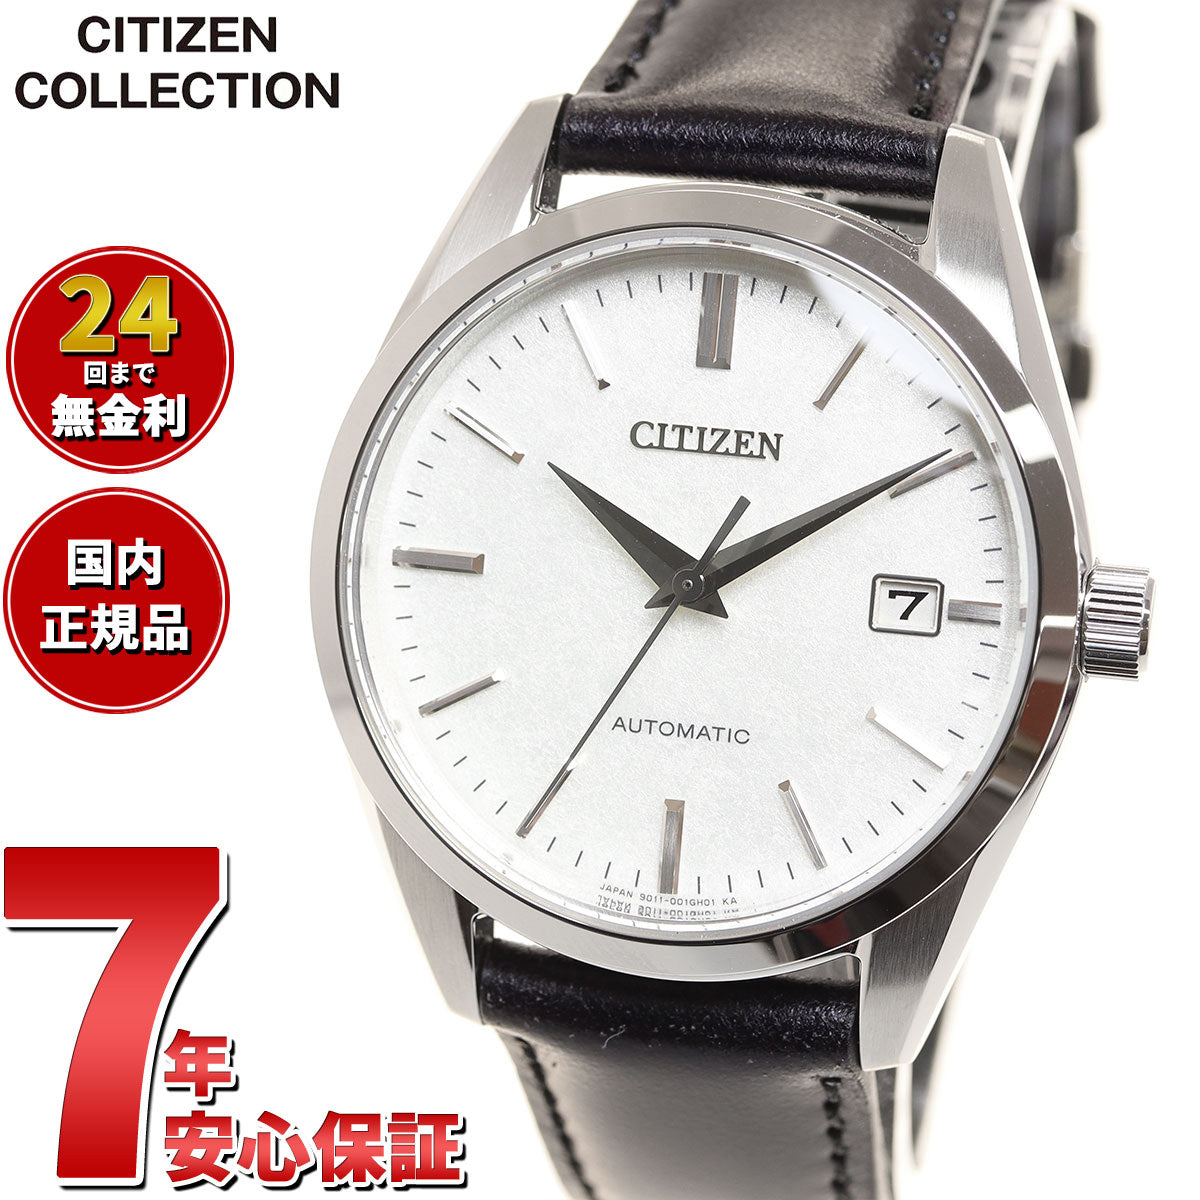 シチズンコレクション CITIZEN COLLECTION メカニカル 自動巻き 機械式 銀箔漆文字板モデル 腕時計 メンズ NB1060-04A